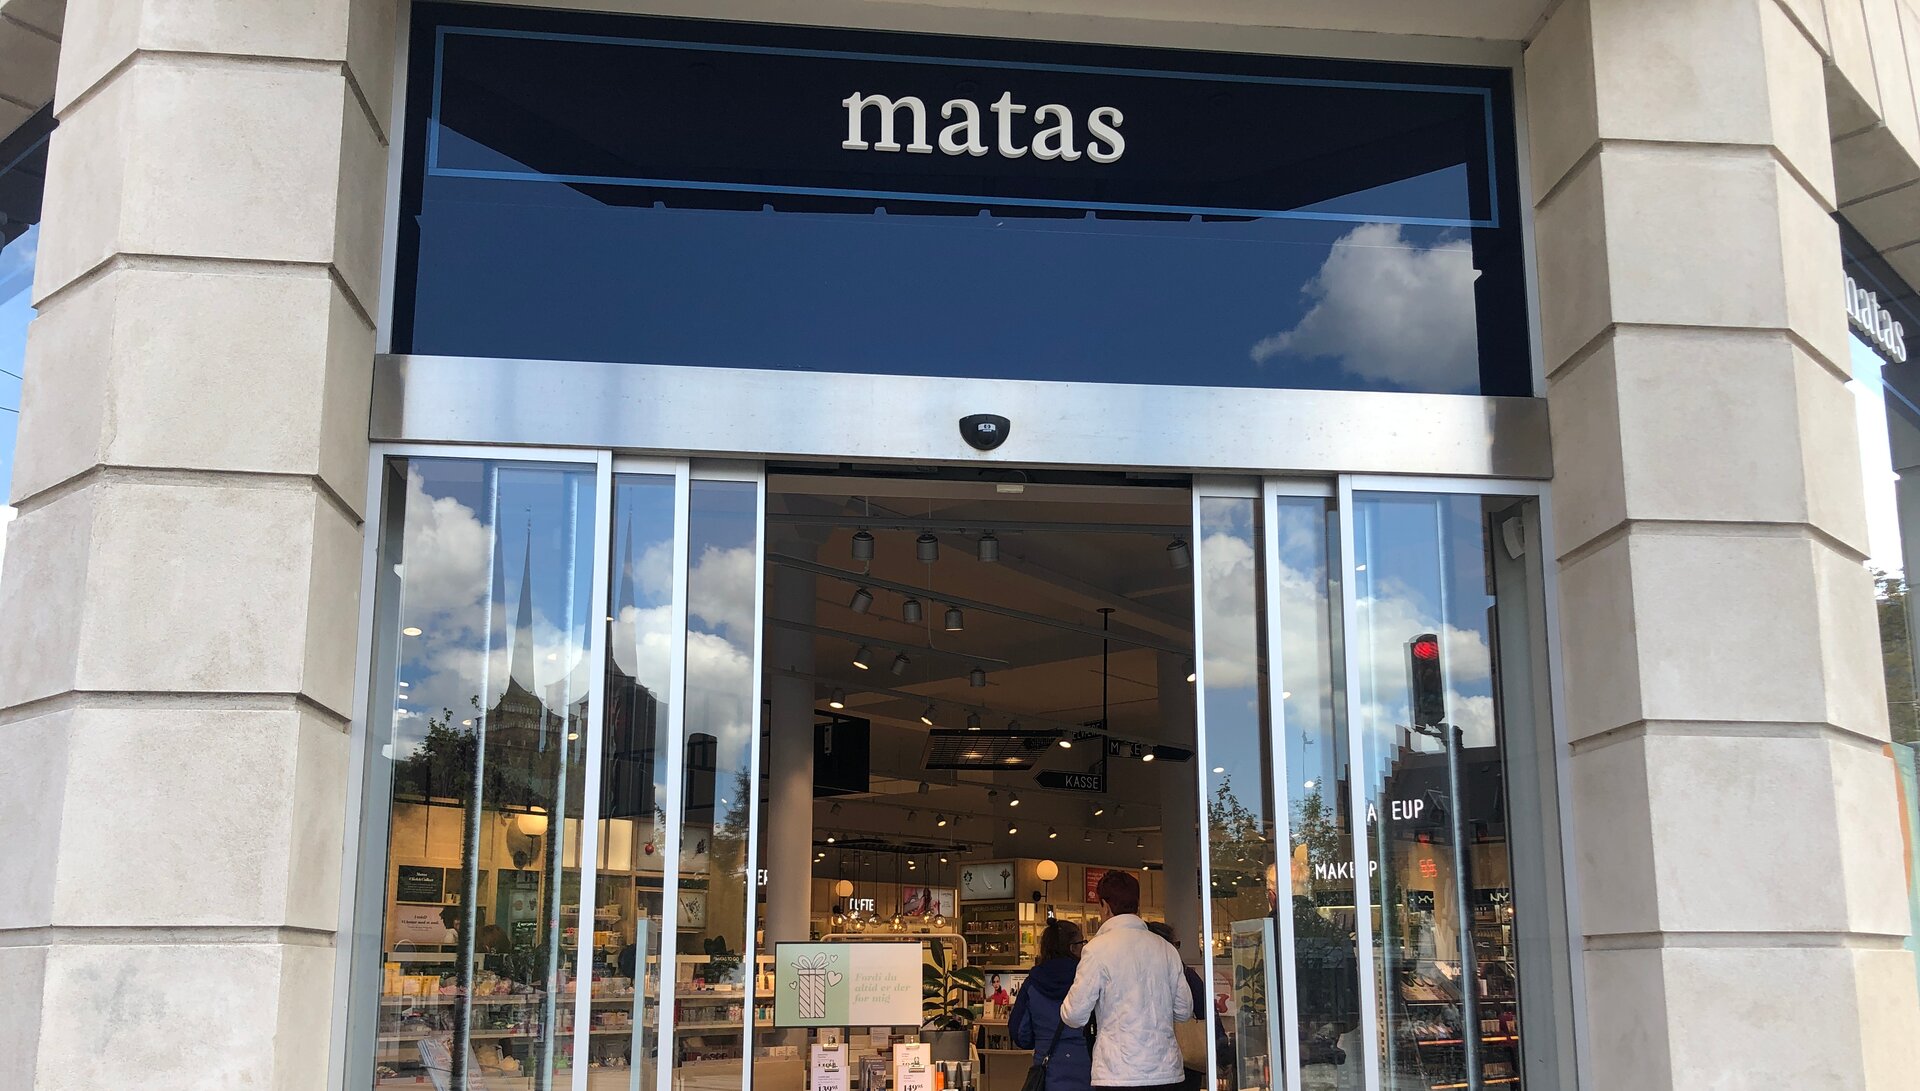 Matas - Unik shoppingupplevelse tvärsöver plattformar